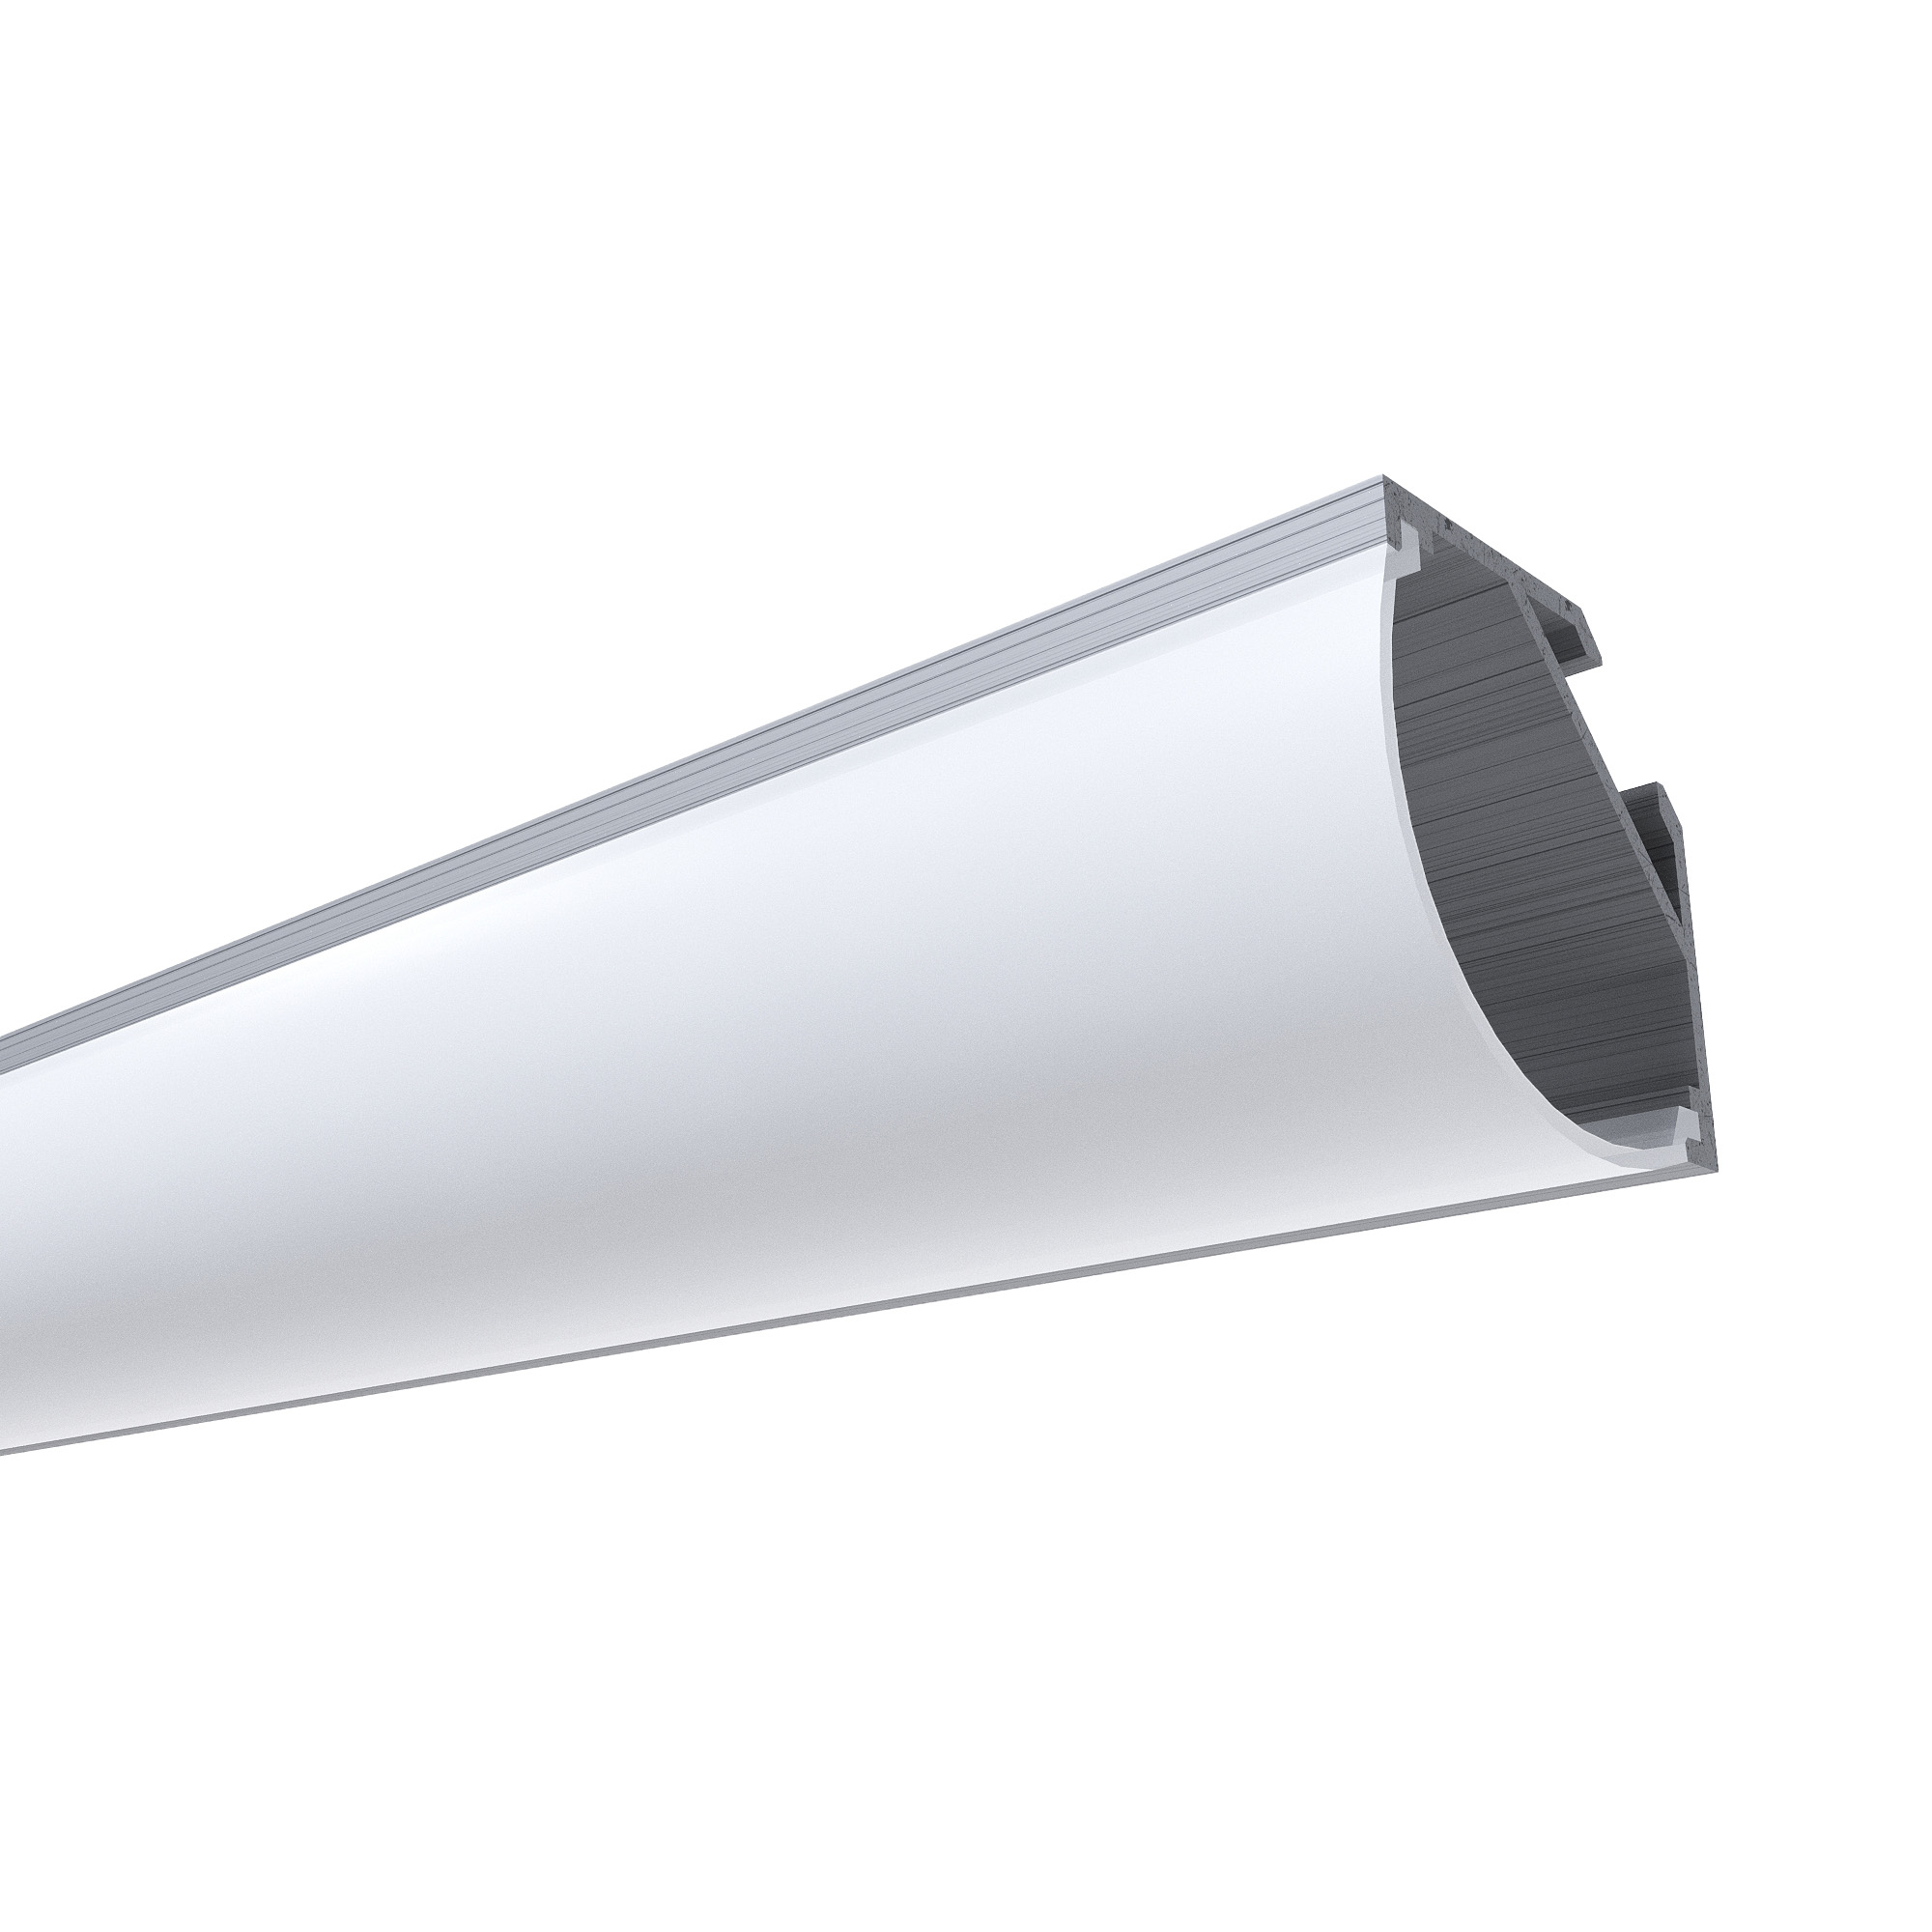 фото Алюминиевый угловой профиль apeyron накладной для светодной ленты, широкий рассеиватель 1